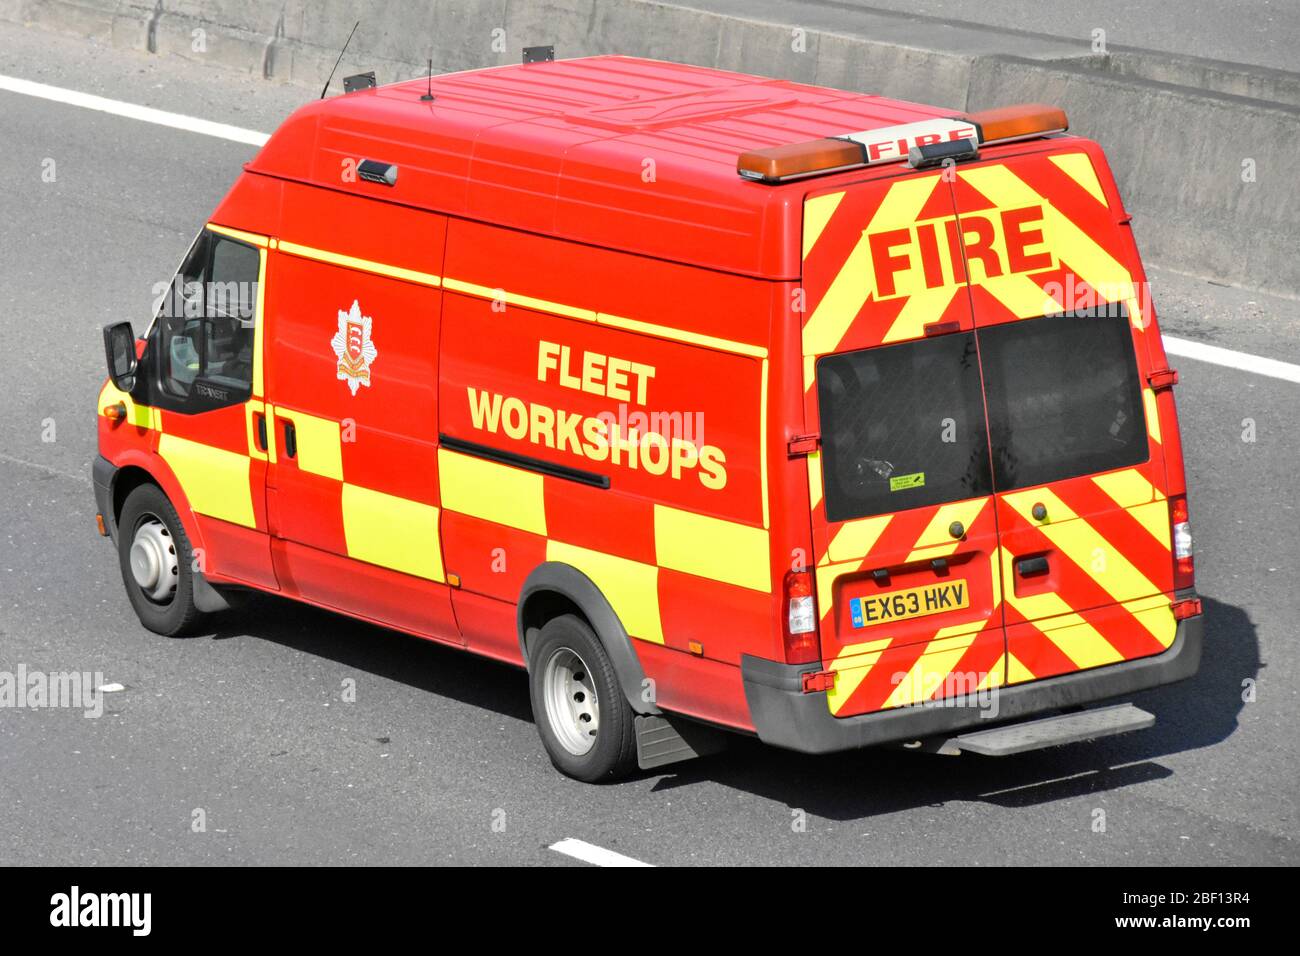 Vista dall'alto dei contrassegni di pericolo posteriori e laterali sul furgone rosso Essex County Fire Service Fleet Workshops Support guidando lungo l'autostrada Essex Inghilterra UK Foto Stock